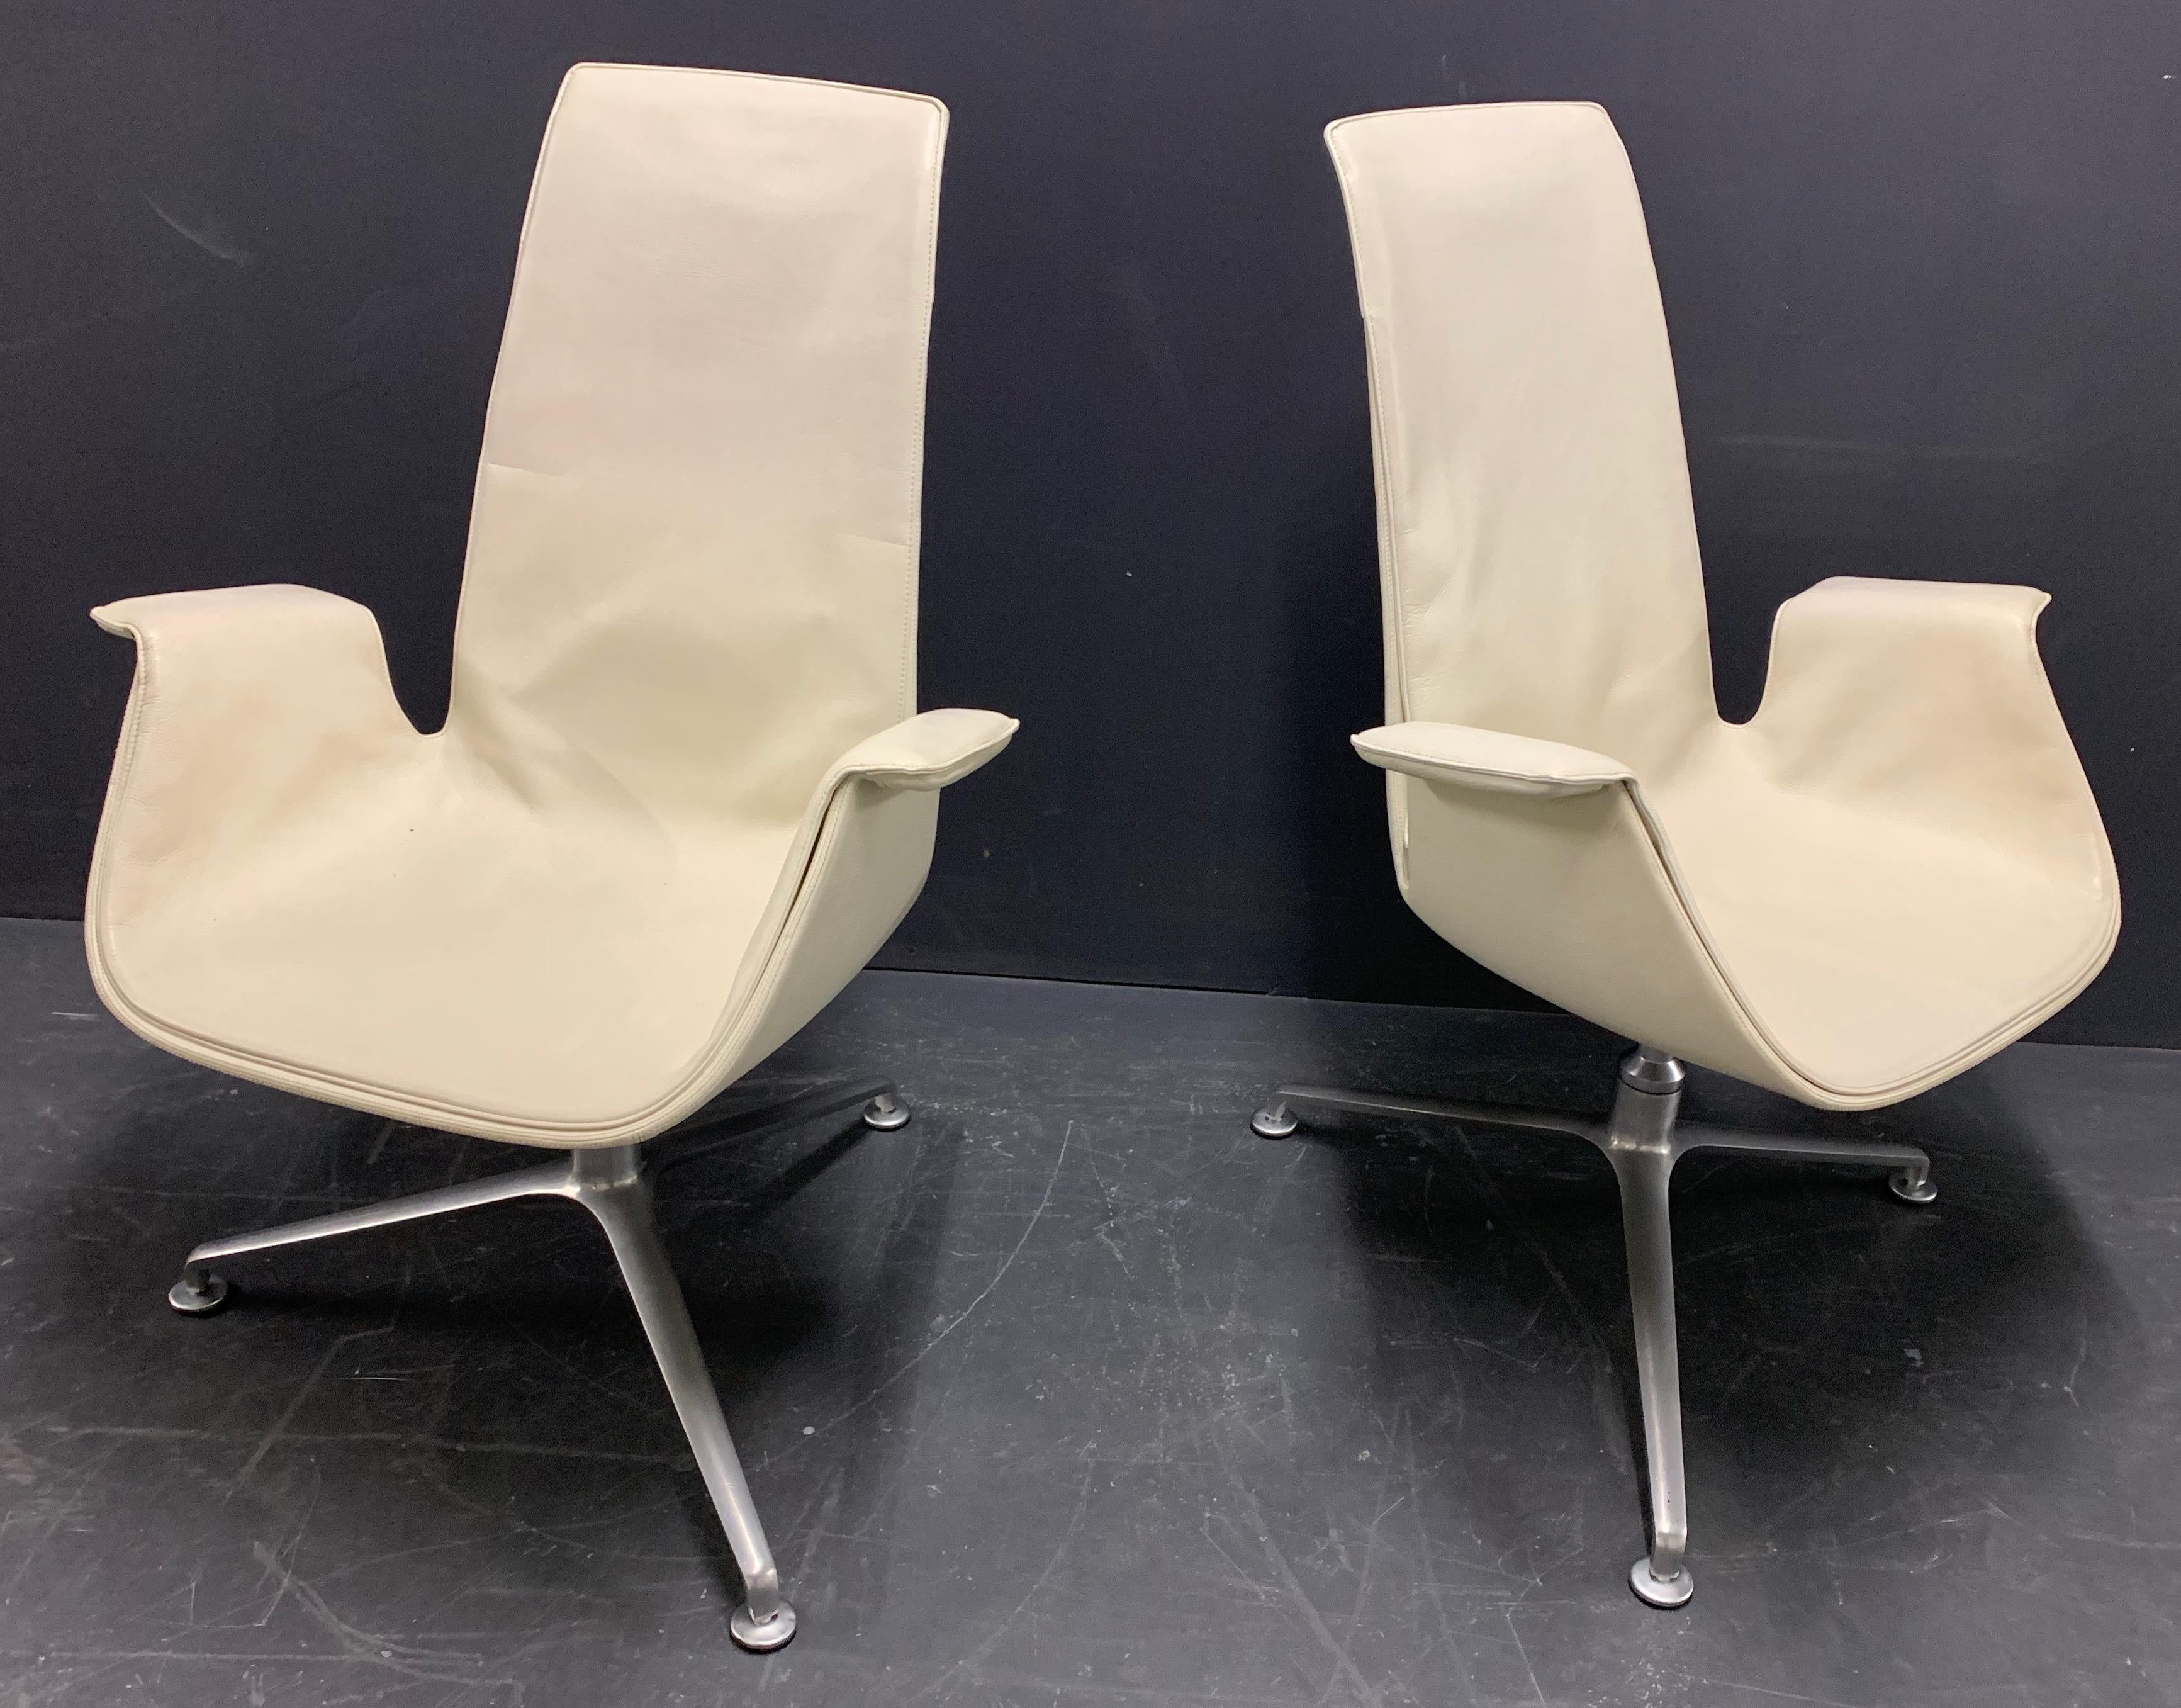 Ausstellungsmodelle in gutem Zustand. Mit drehbaren Füßen. Diese Stühle wurden 1968 entworfen und von Walter Knoll hergestellt.